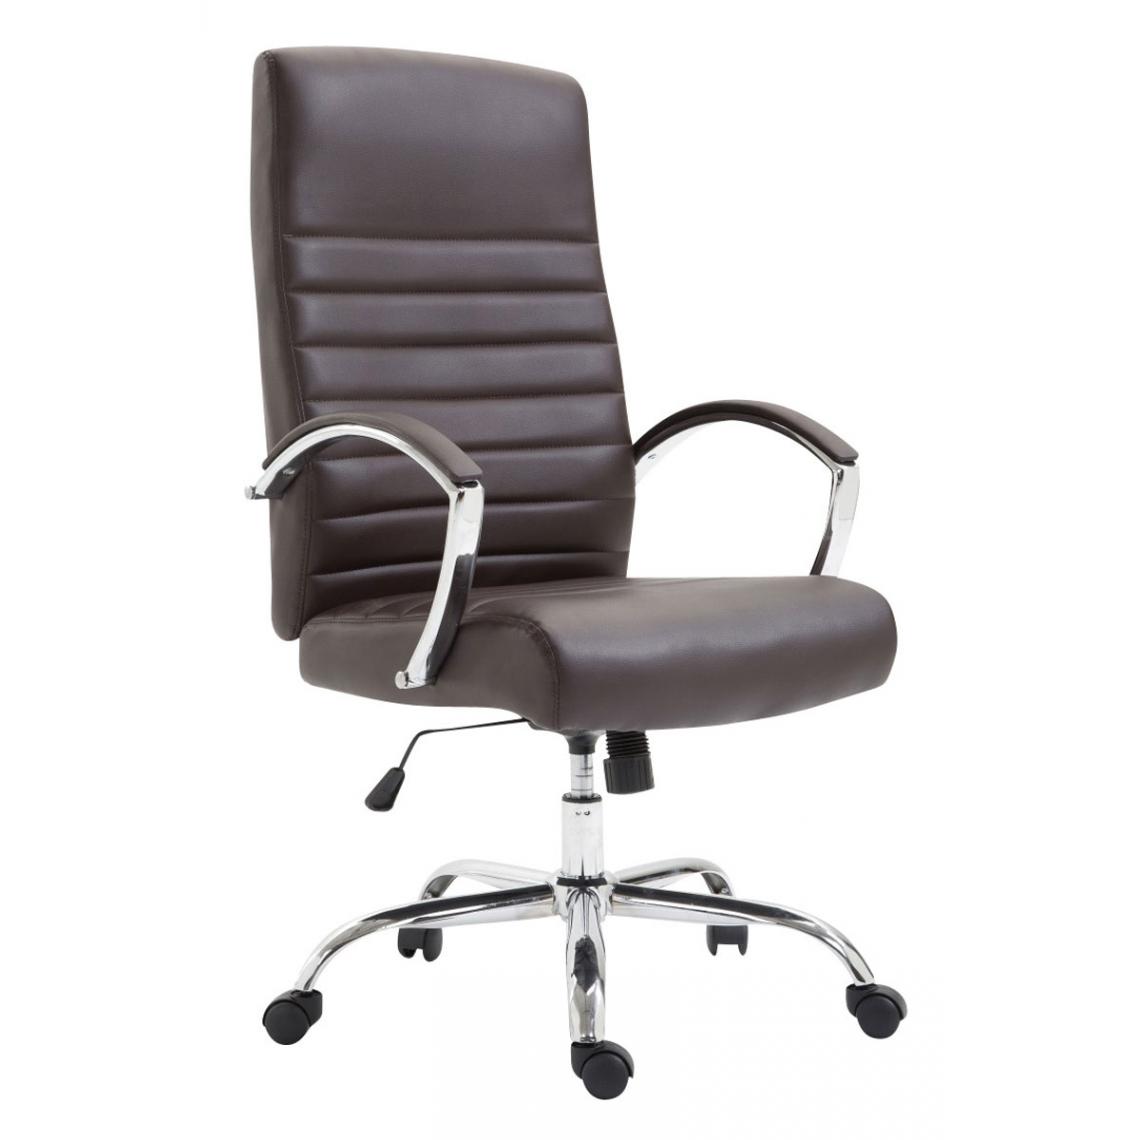 Icaverne - Moderne Chaise de bureau edition Dakar simili cuir couleur marron - Chaises